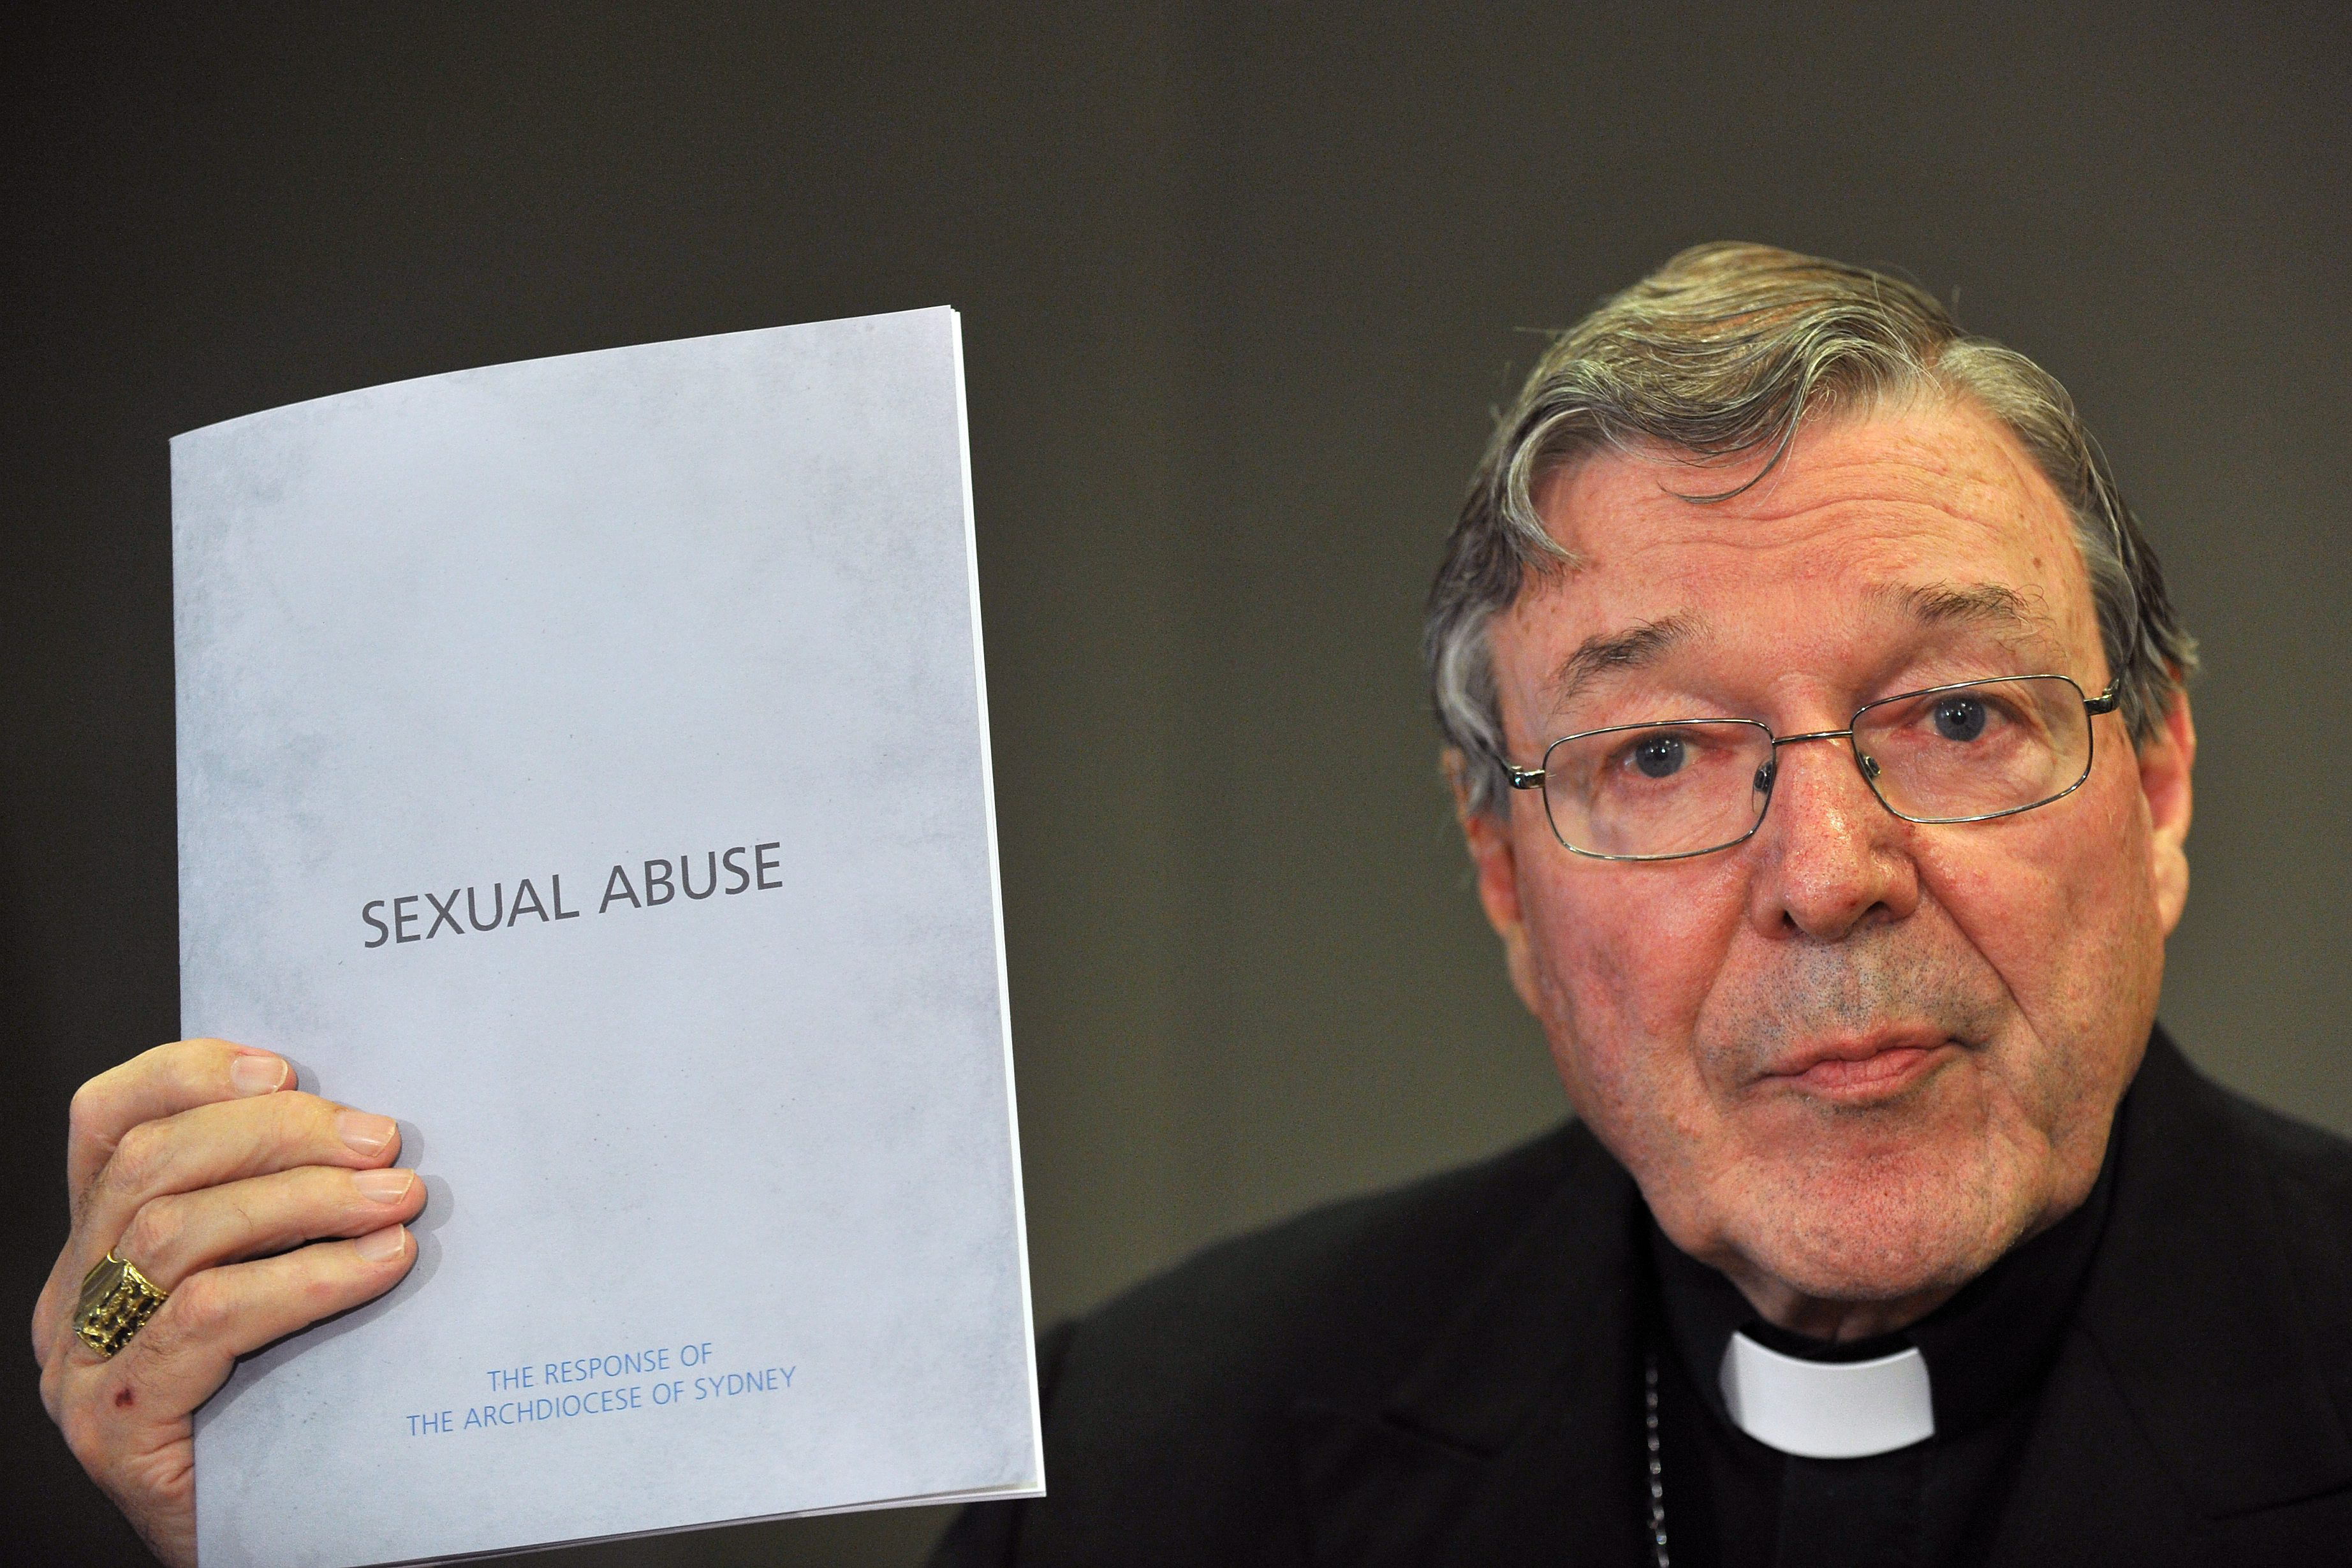 El máximo representante de la Iglesia católica australiana, George Pell, reconoció que muchas denuncias fueron silenciadas en circunstancias sospechosas